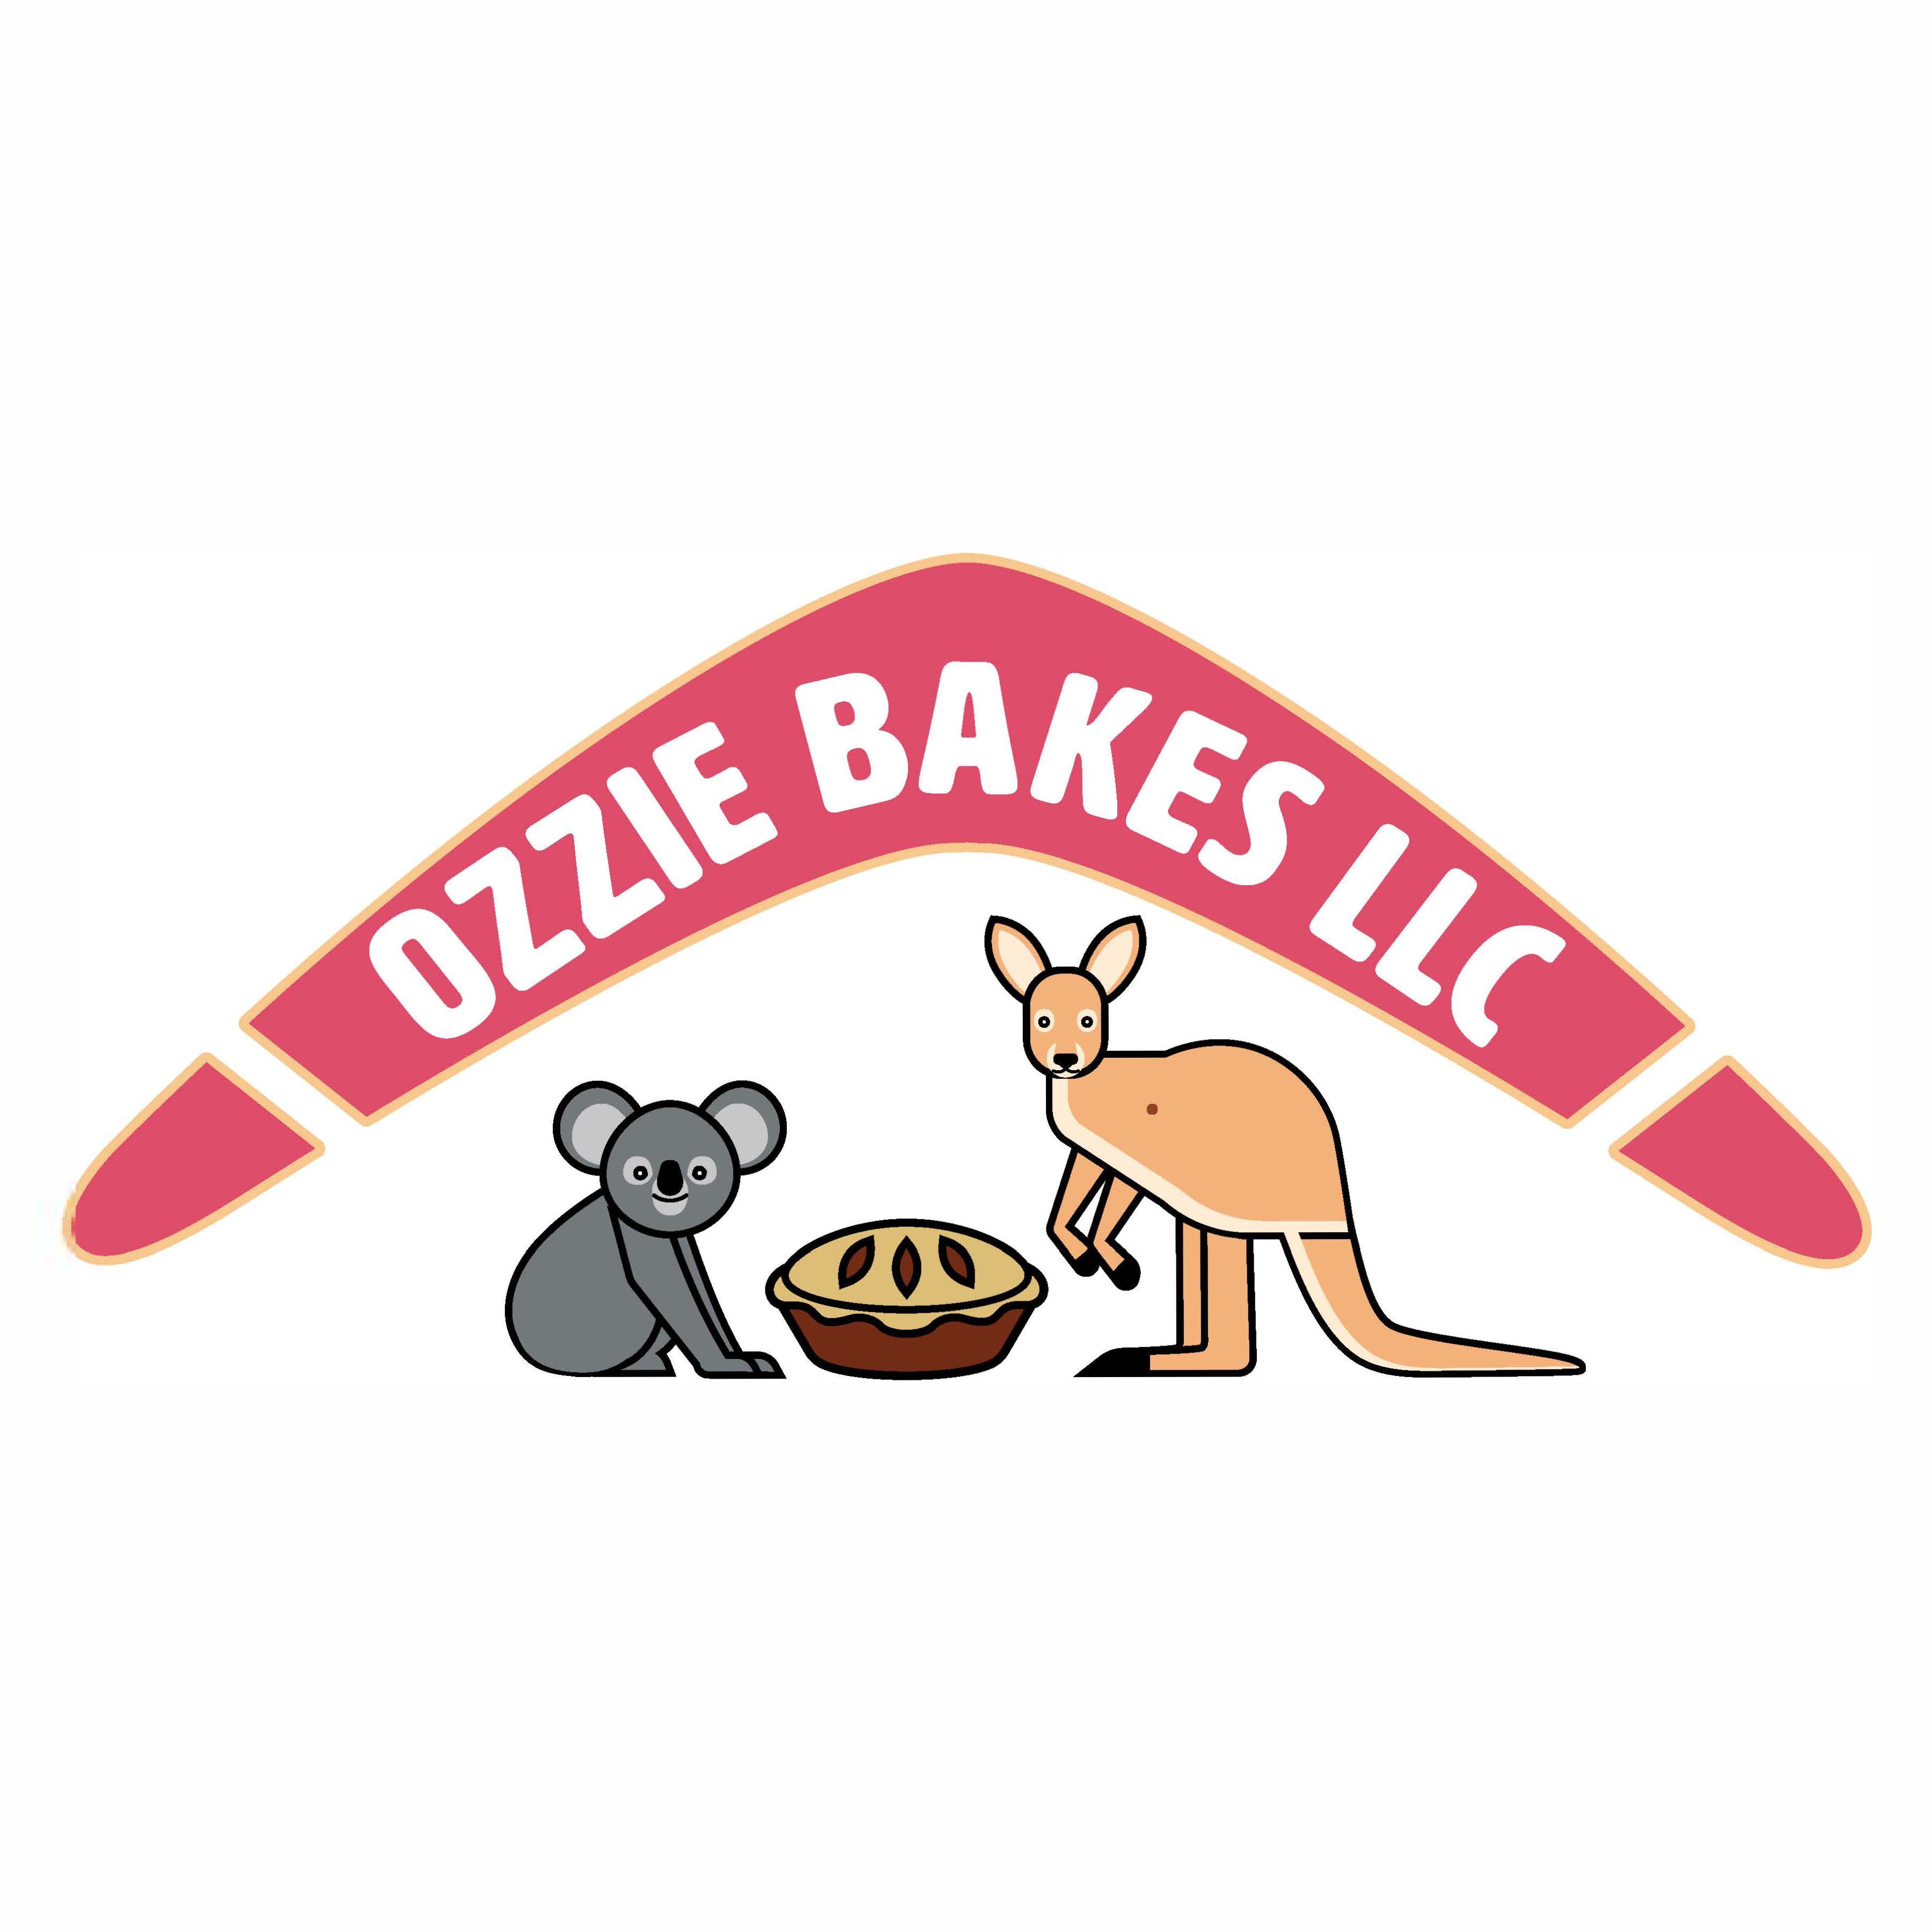 Ozzie Bakes LLC